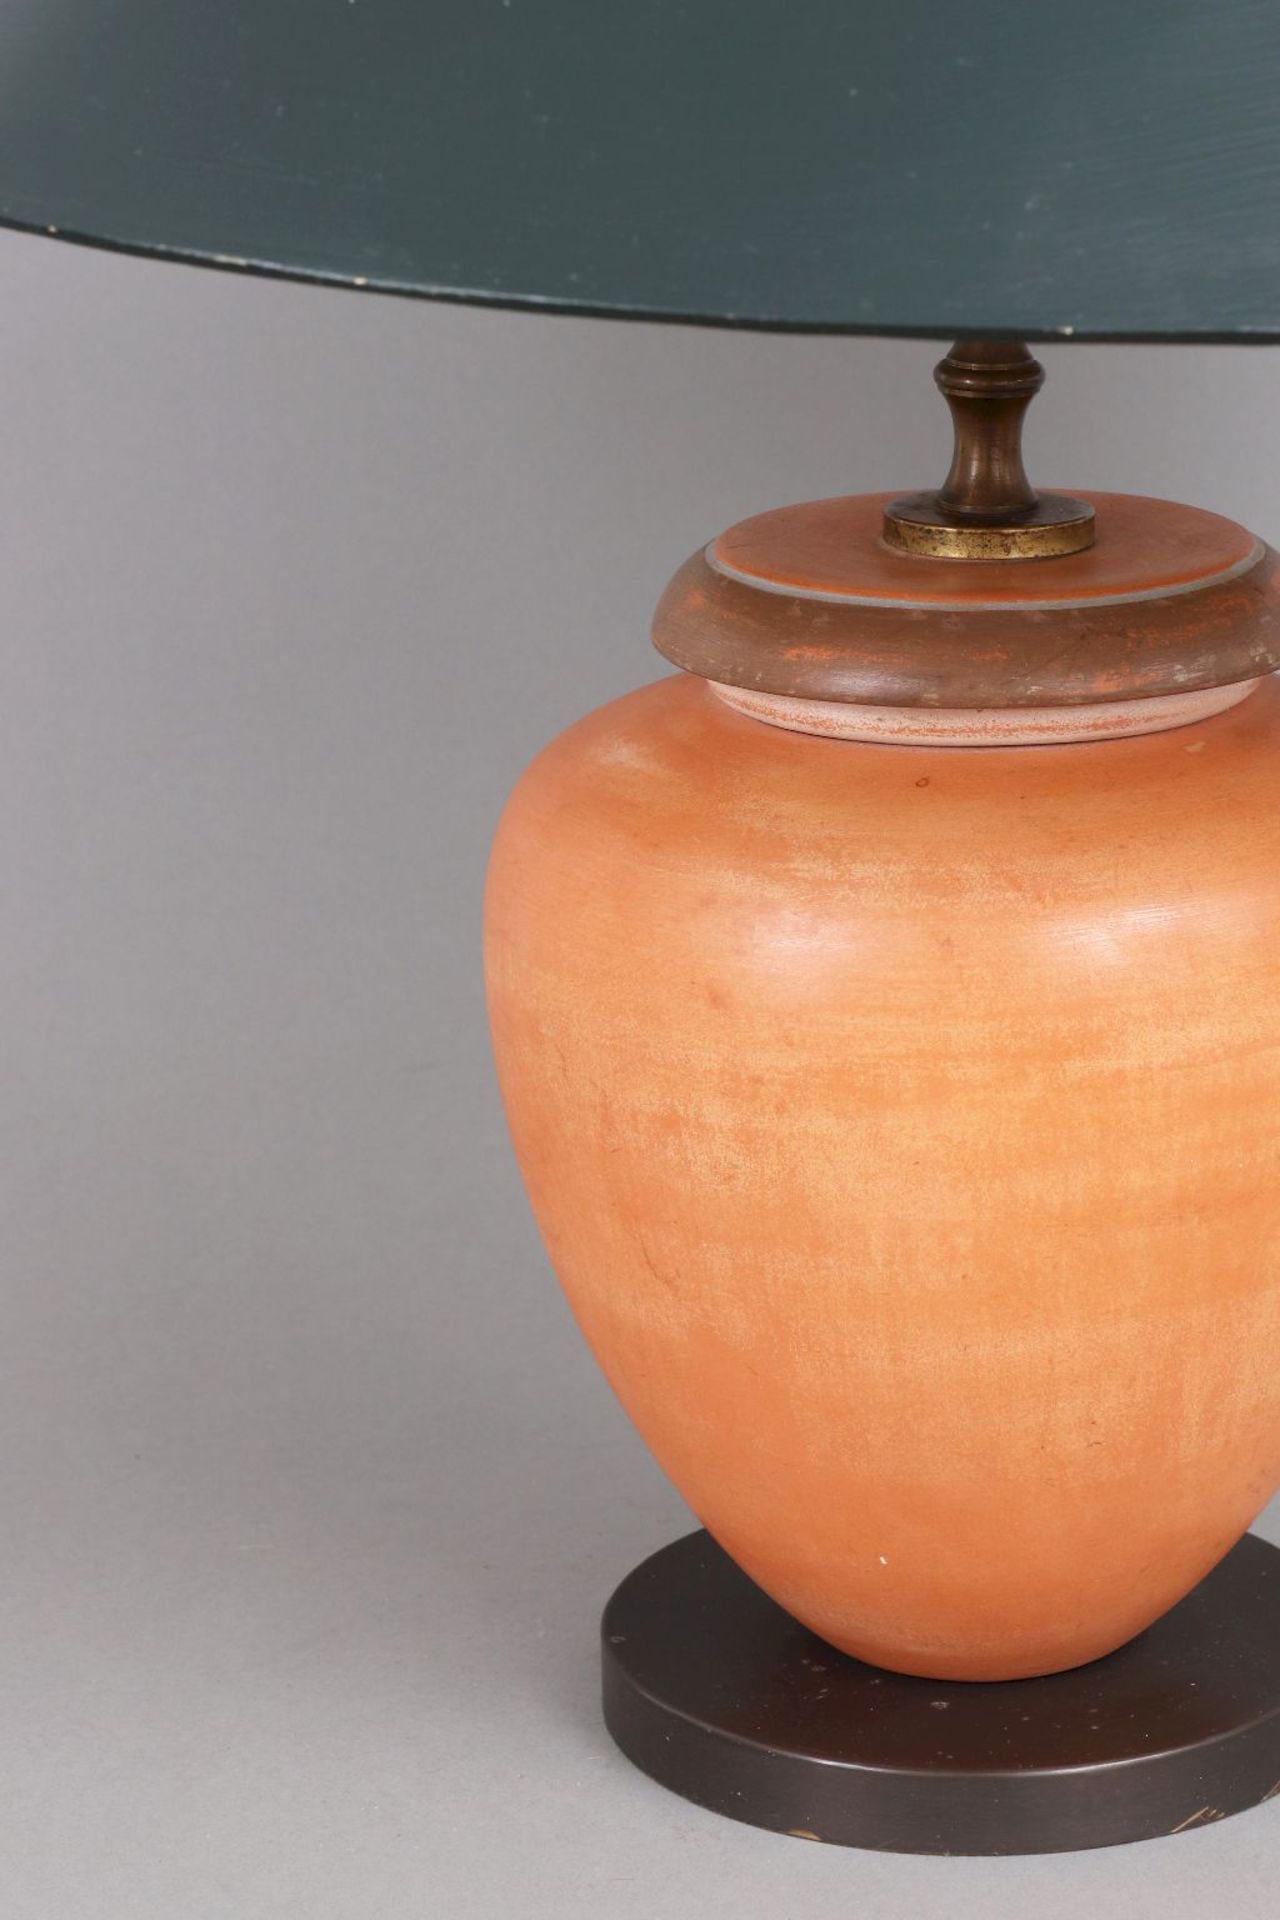 Tischlampe mit Fuß in Form eines Keramik-Deckelgefäßes - Image 2 of 2